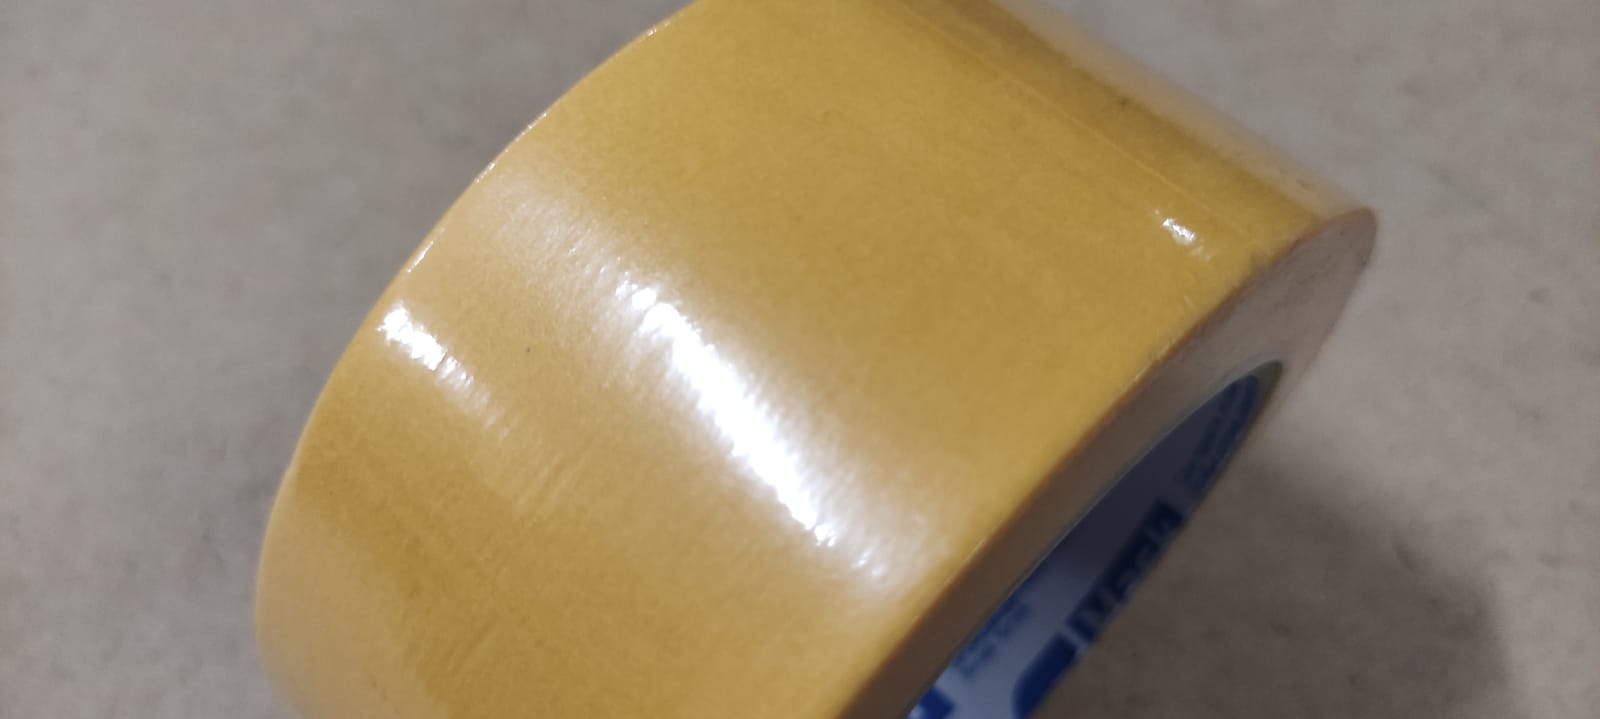 Лента малярная MASK Gold для гладких и шероховатых поверхностей 48 мм х 50 м